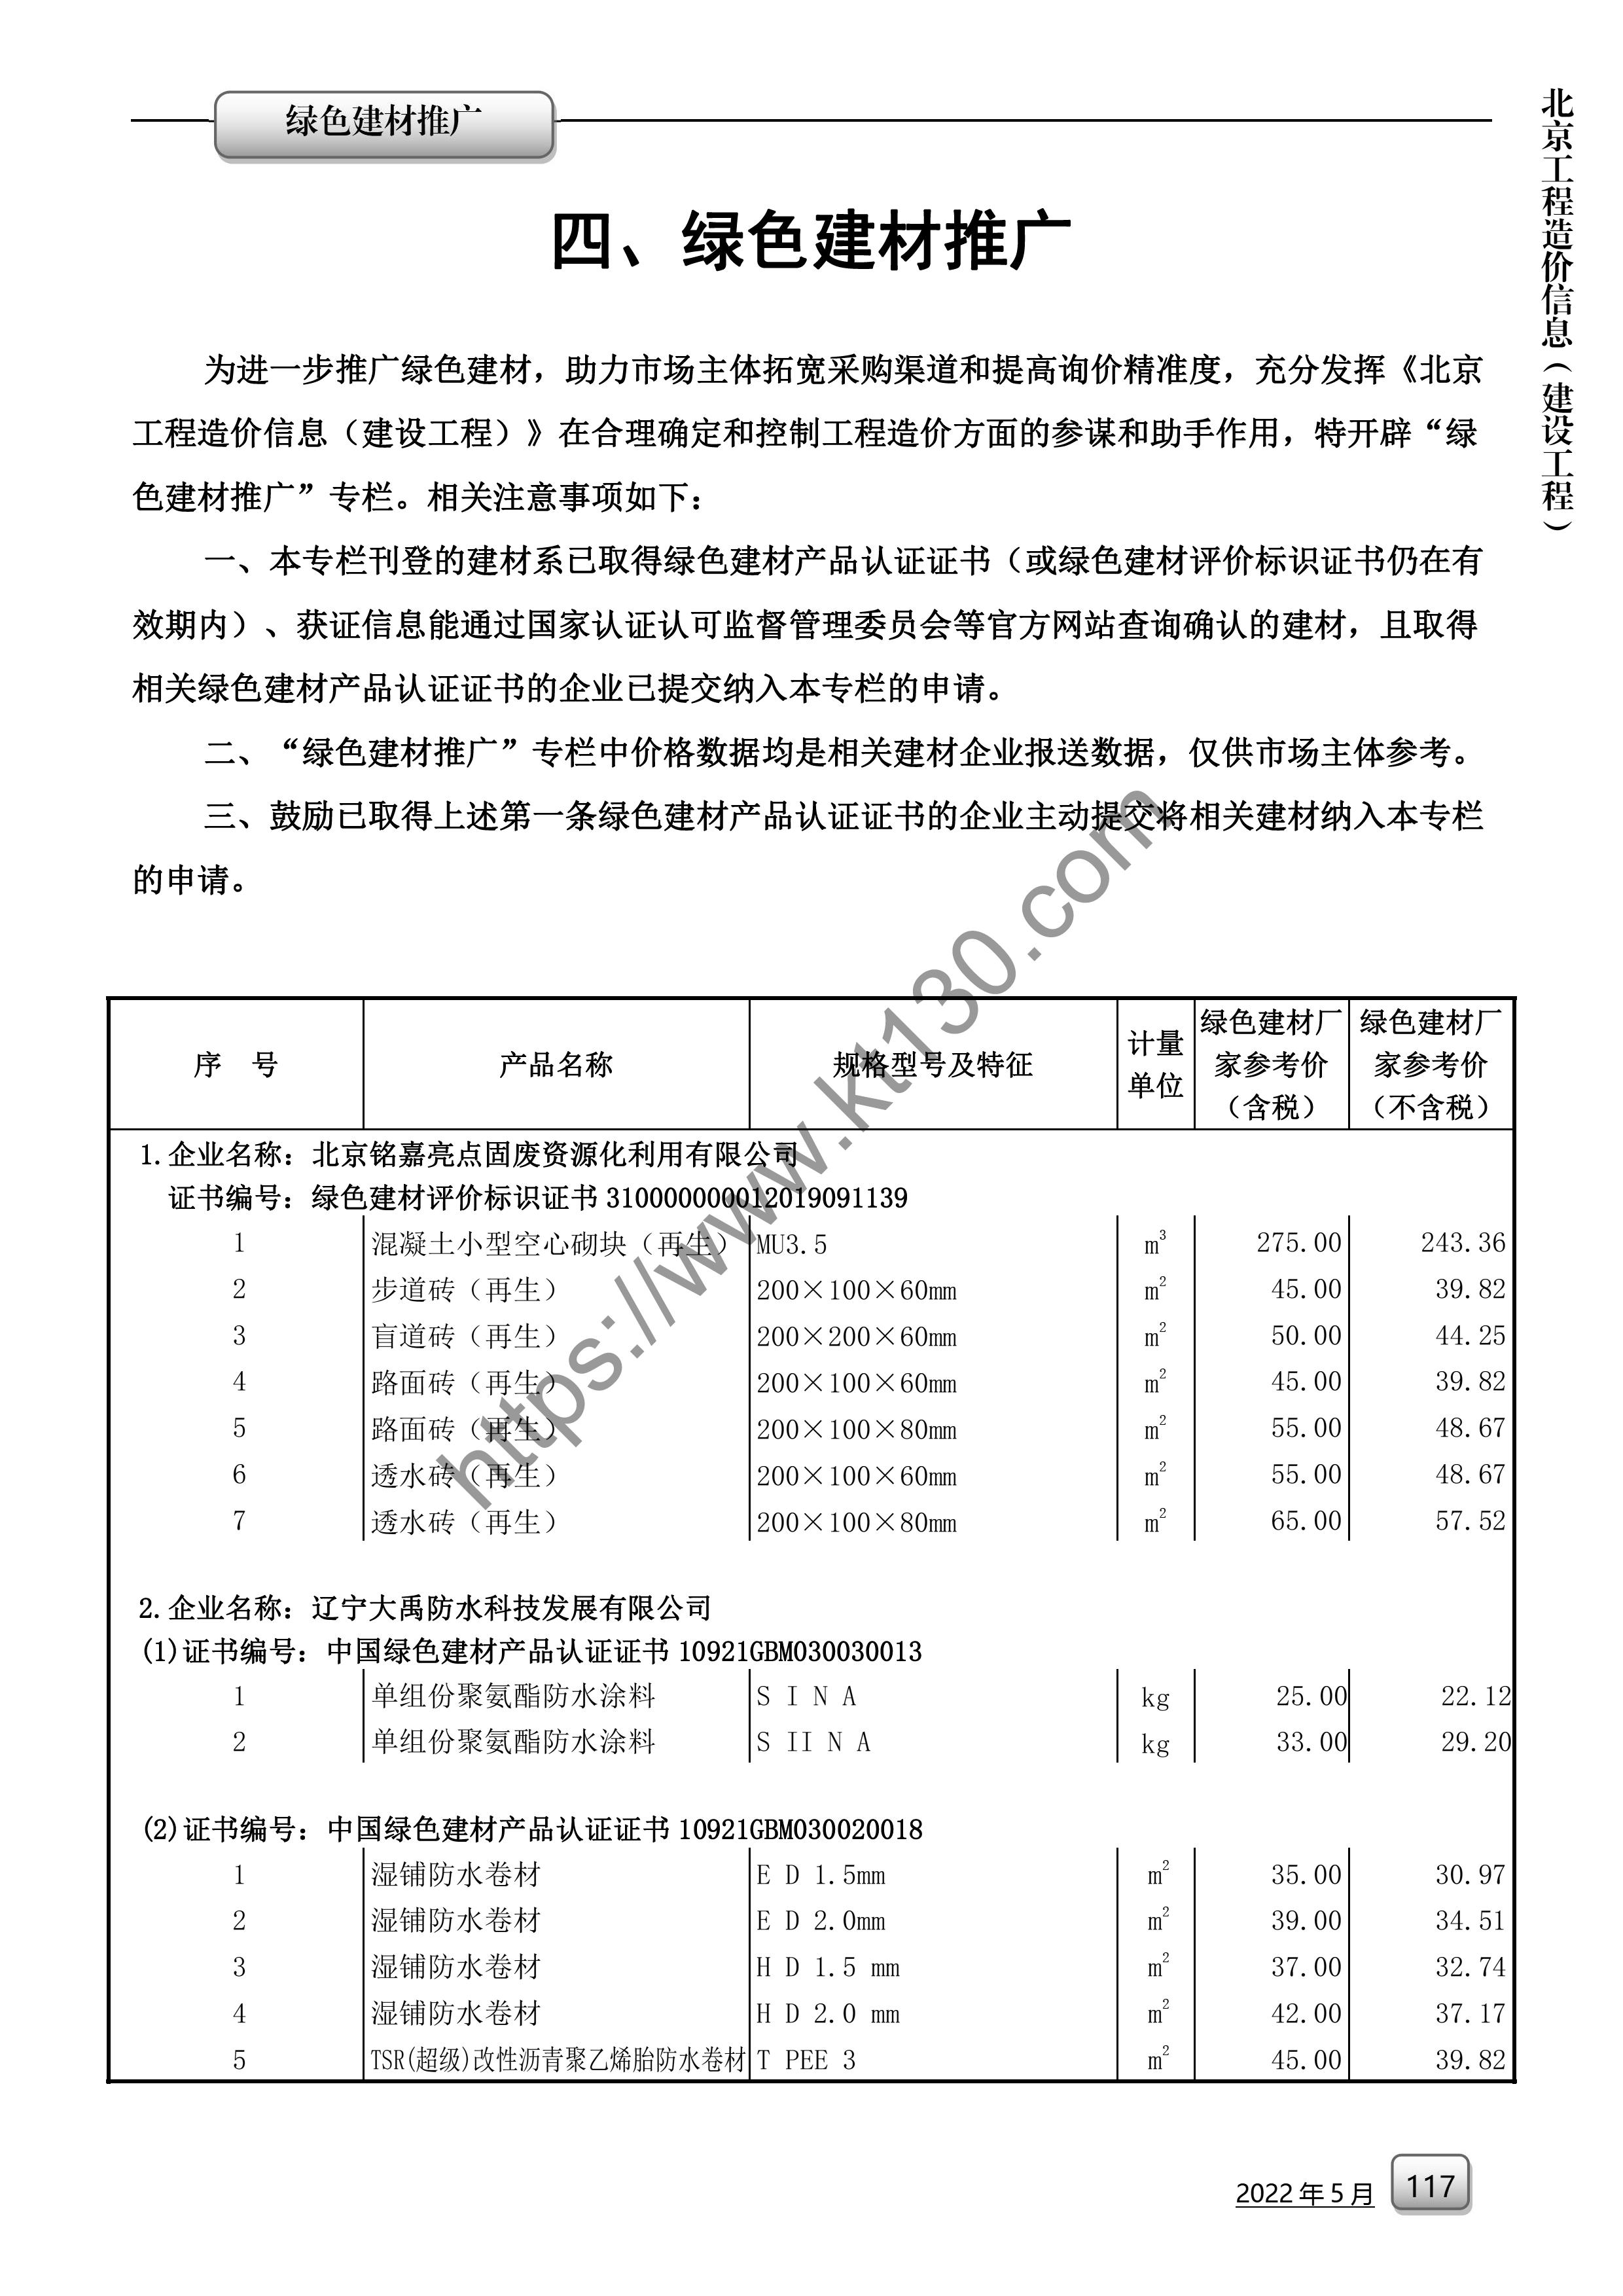 北京市2022年5月份人工价目表